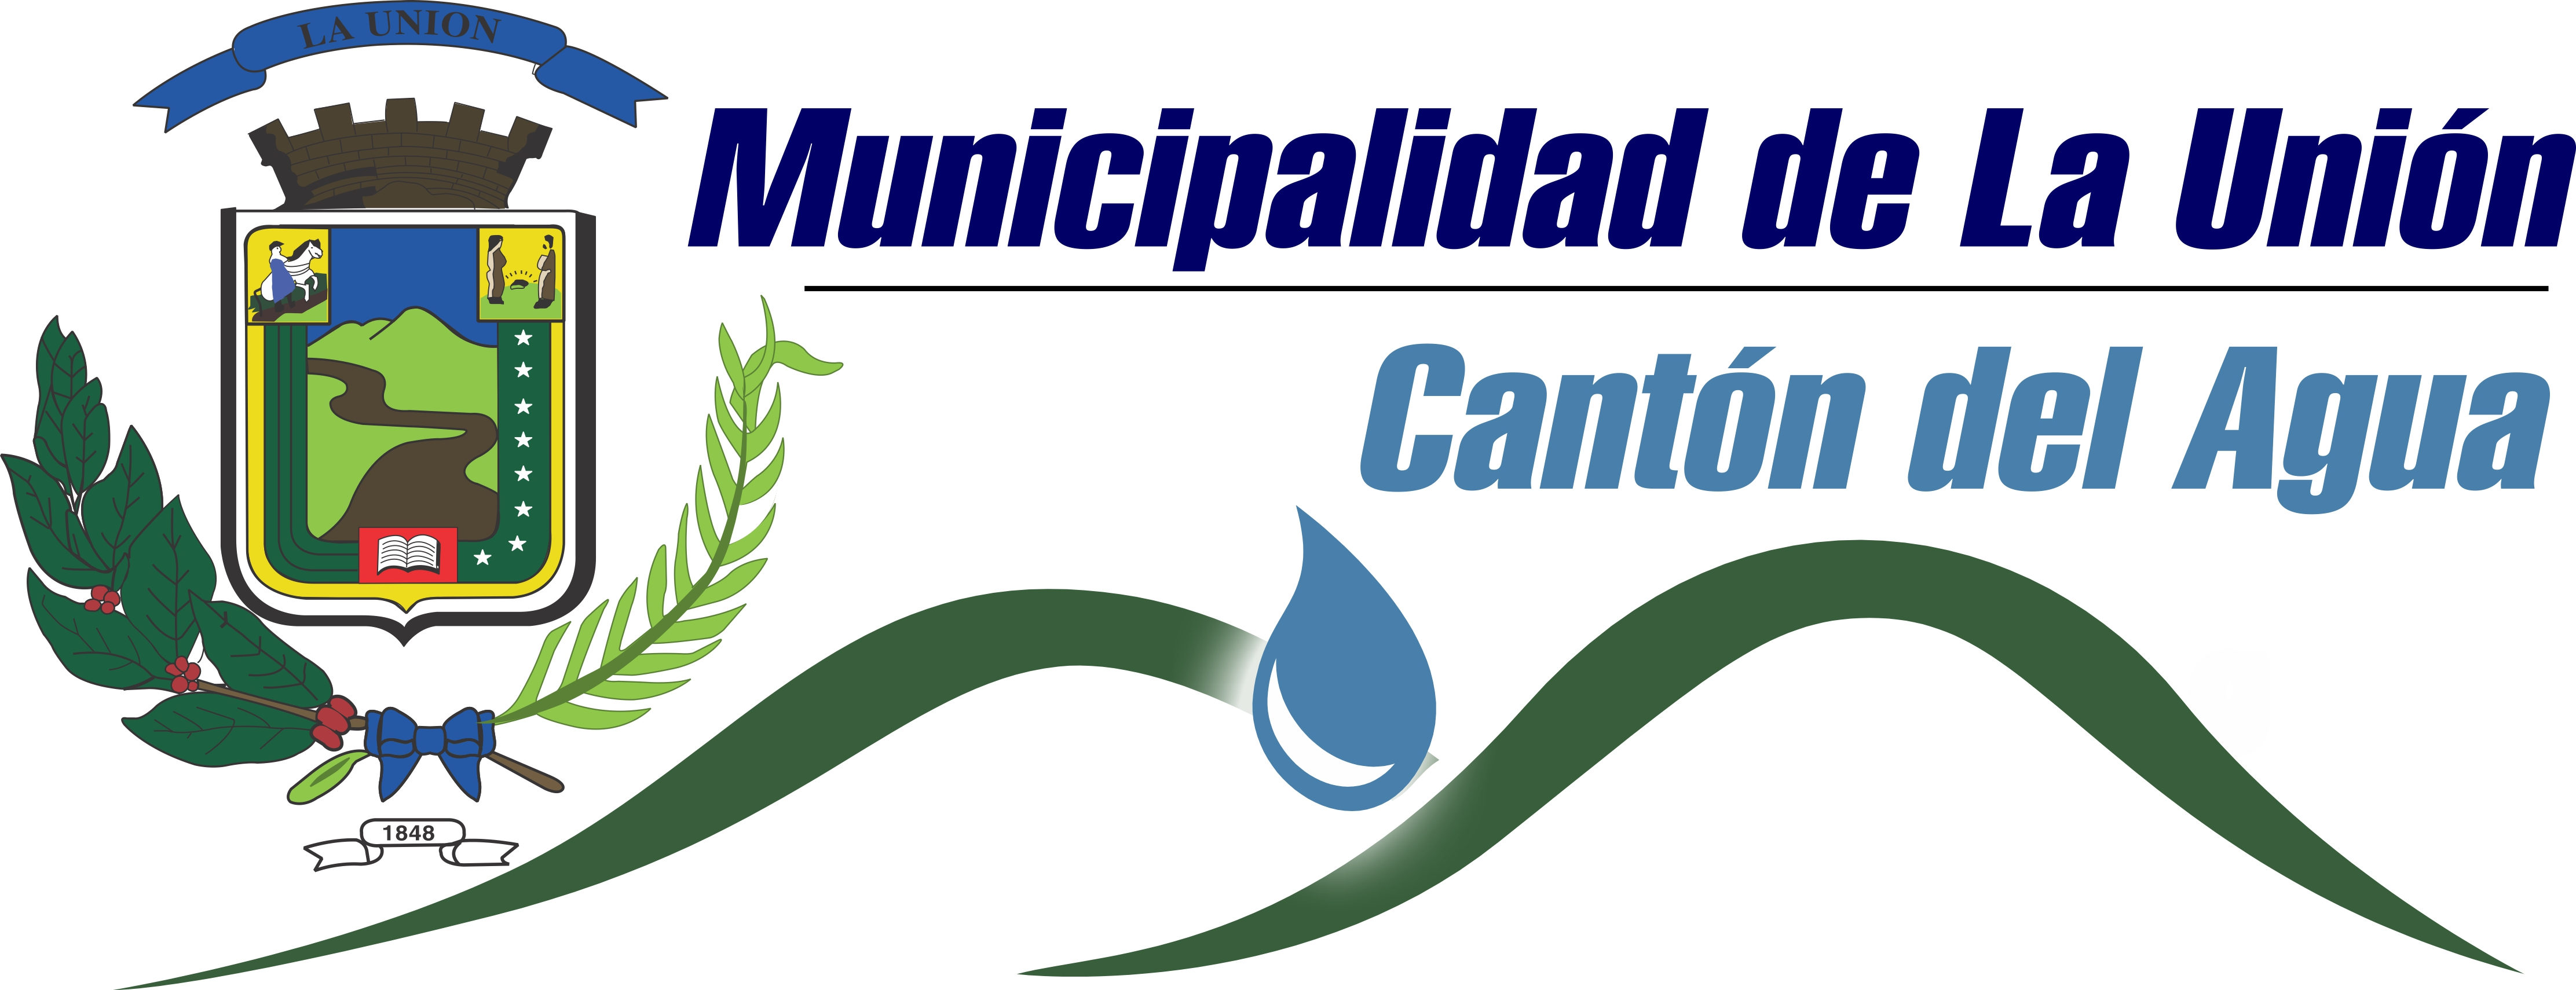 municipalidad la union logo